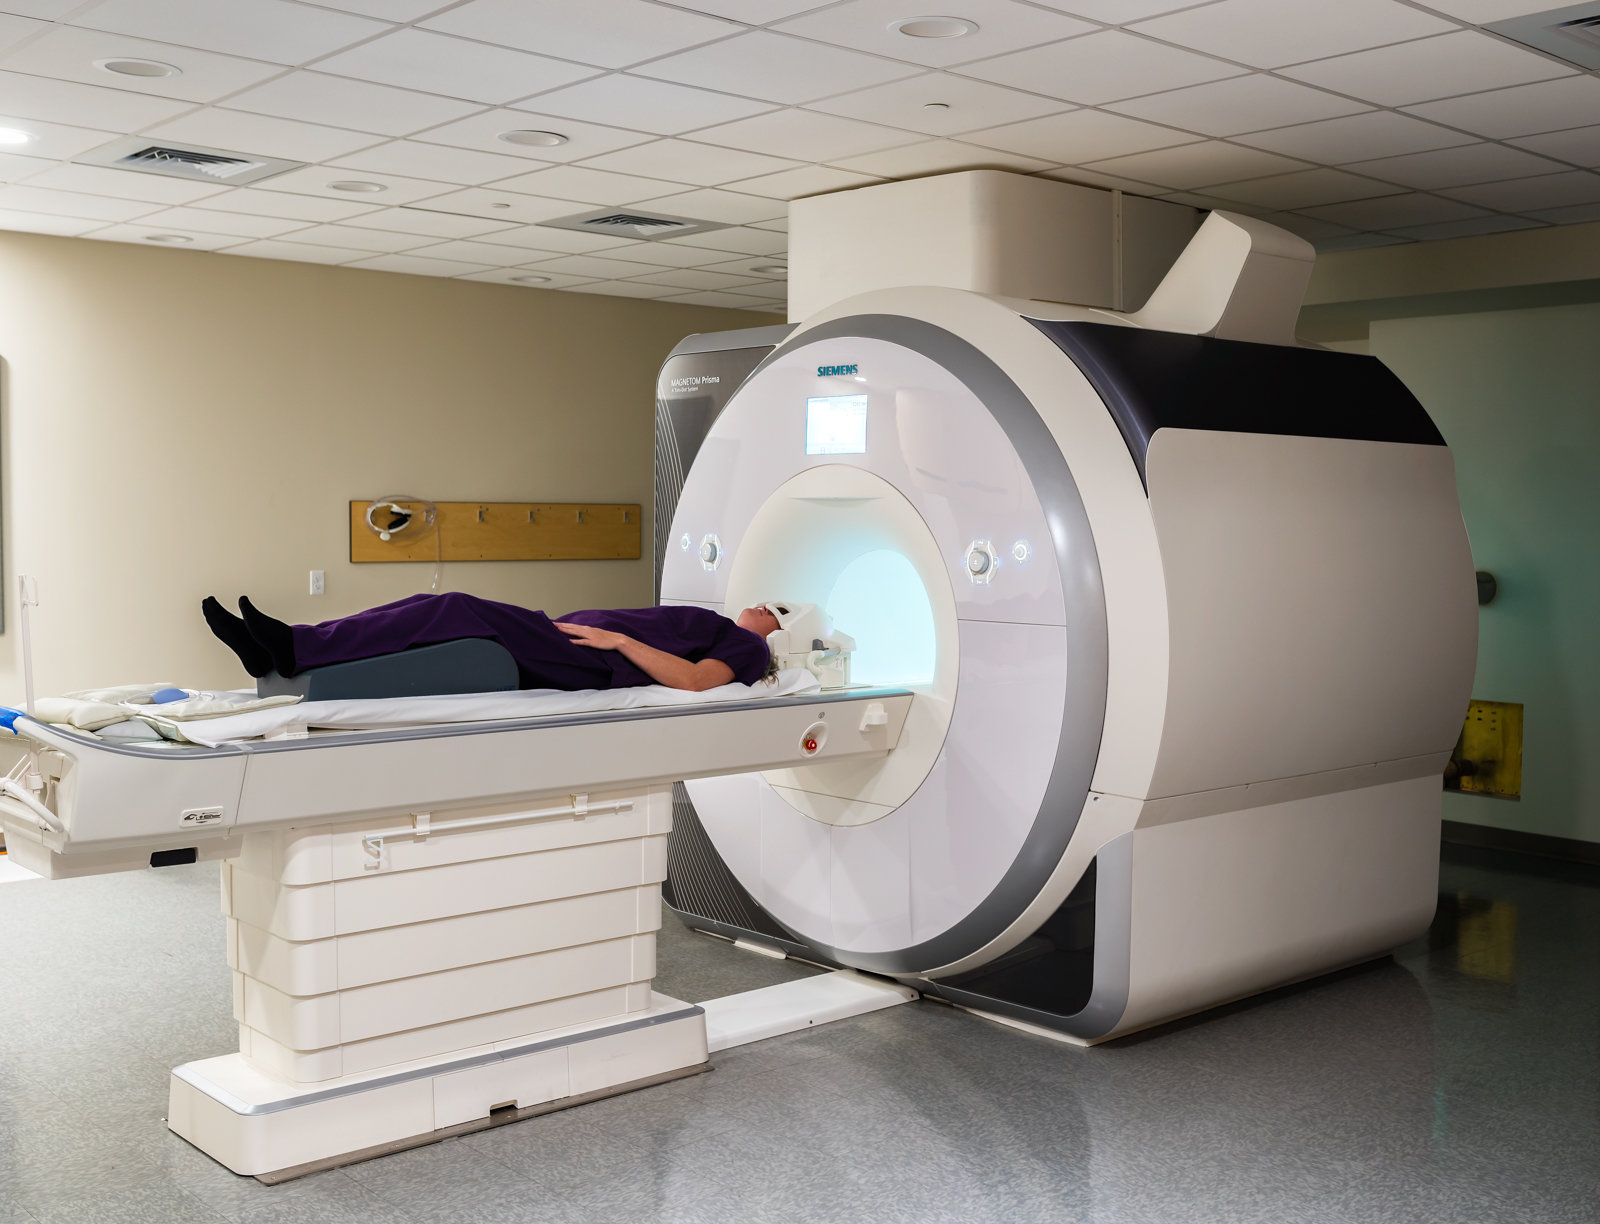 Uno de los participantes en el estudio se somete a una exploración cerebral en una máquina de imagen por resonancia magnética funcional (IRMf). Crédito: CU Boulder